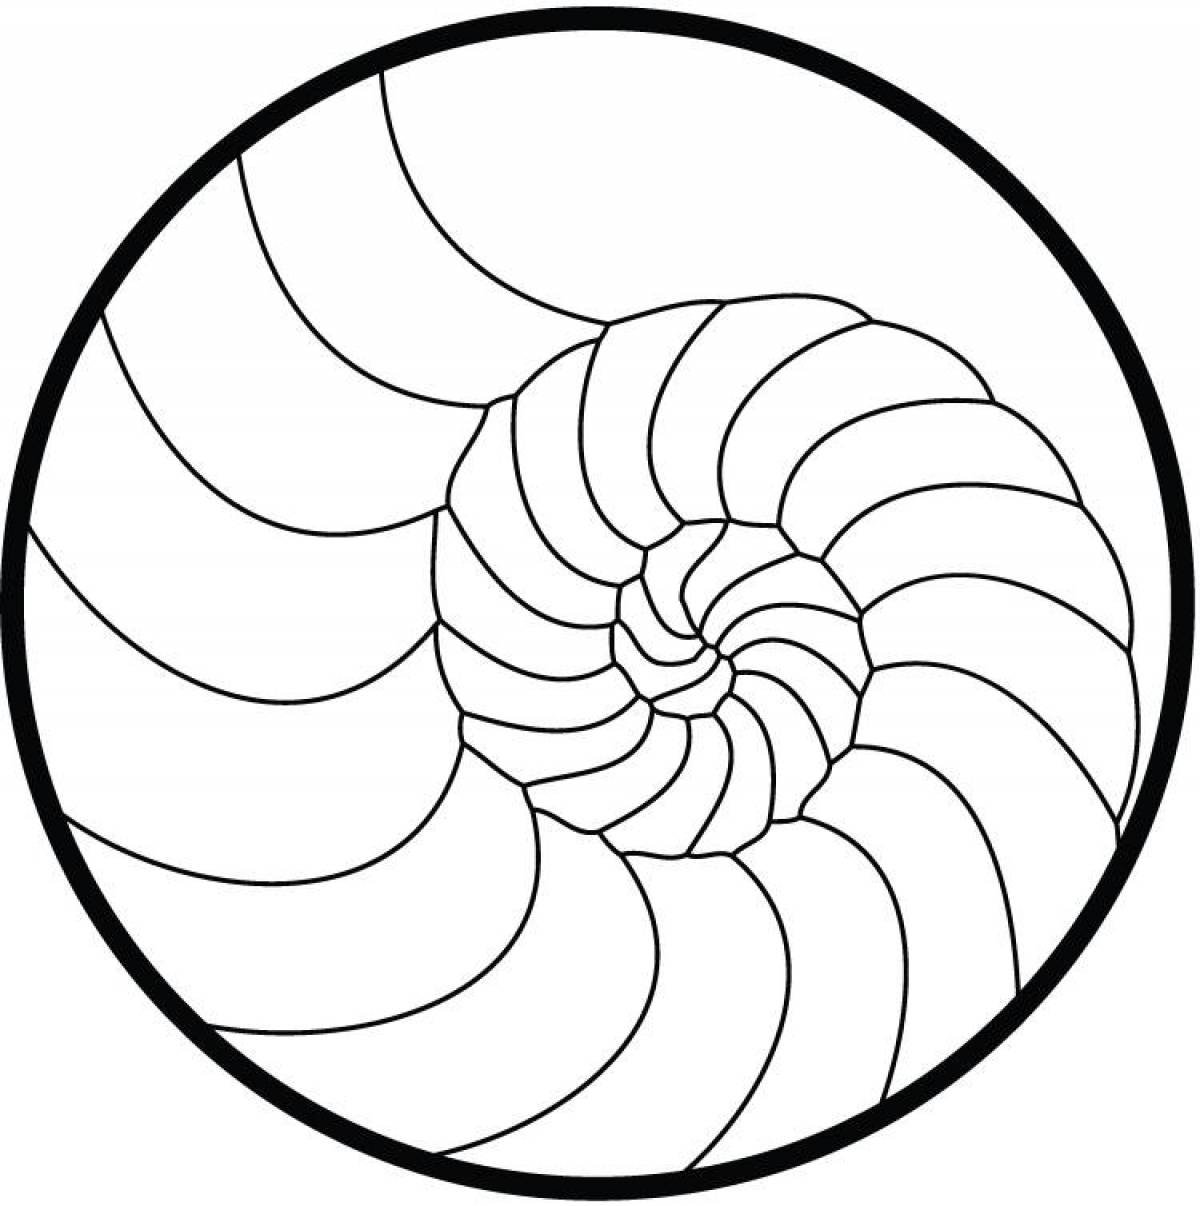 Elegant spiral coloring